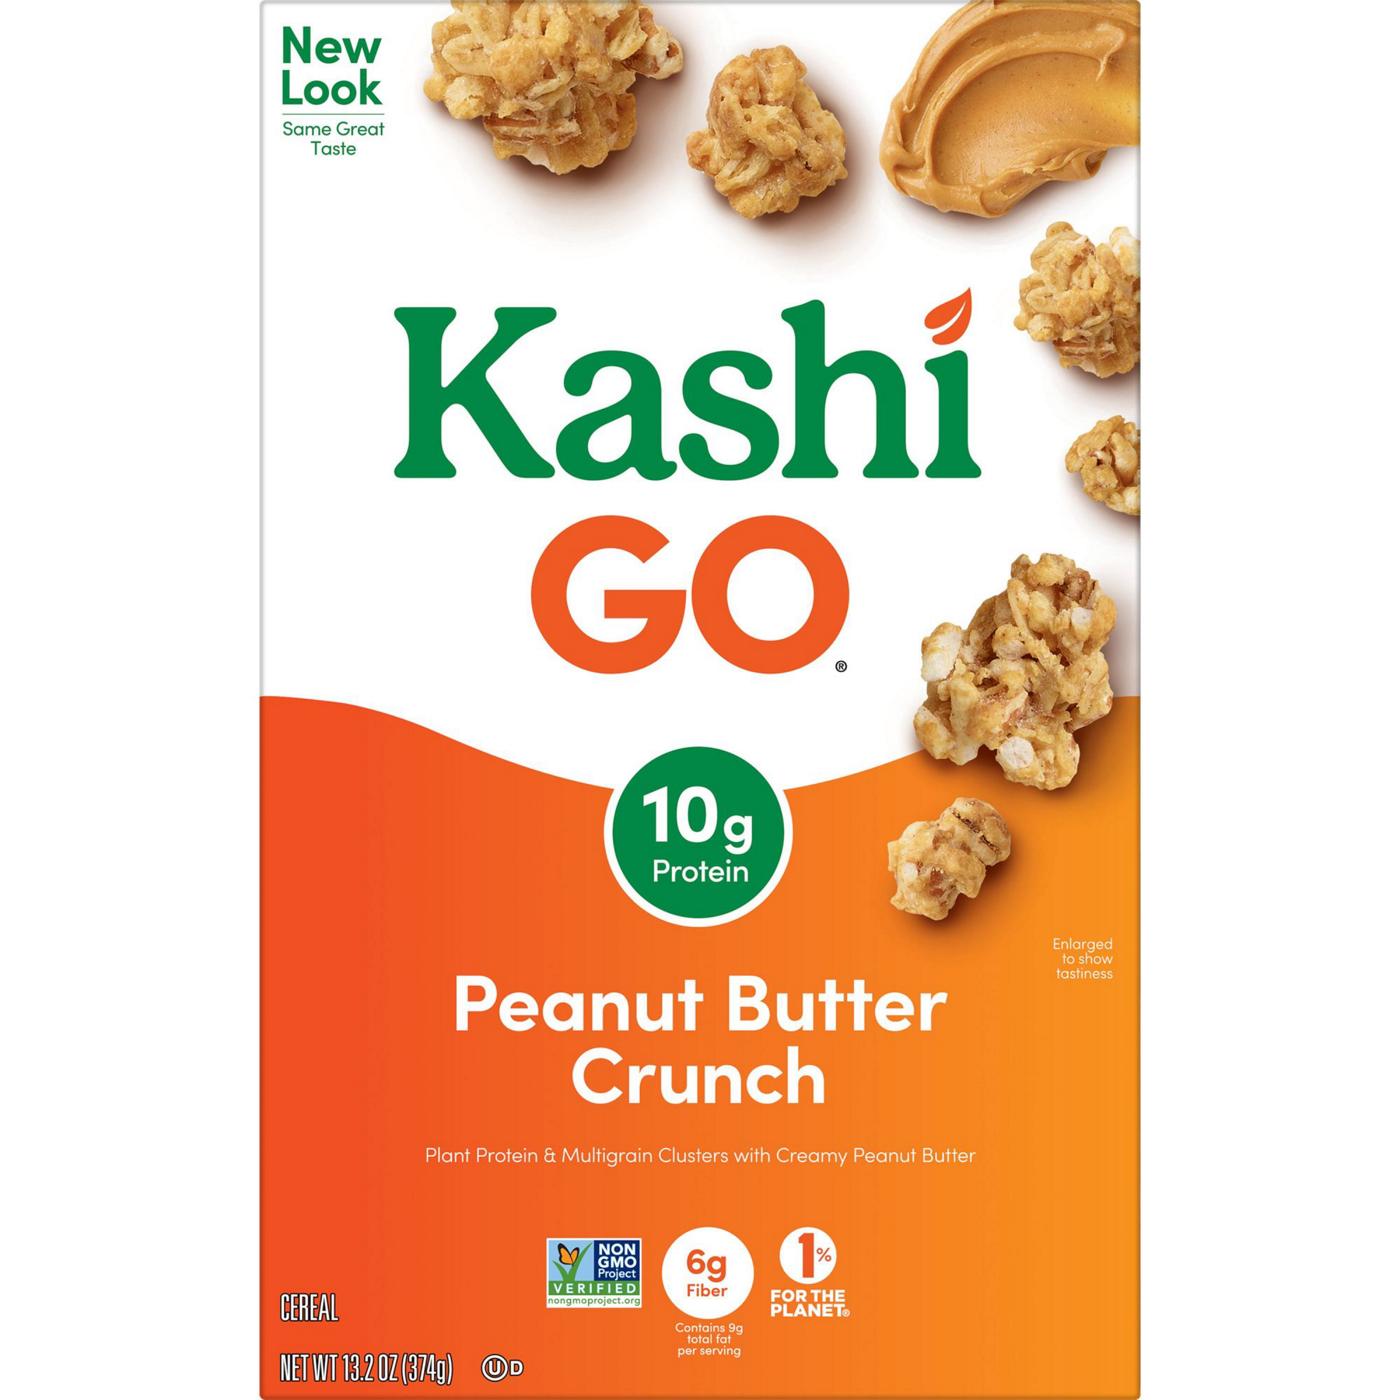 Kashi GO Peanut Butter Crunch Breakfast Cereal; image 6 of 11